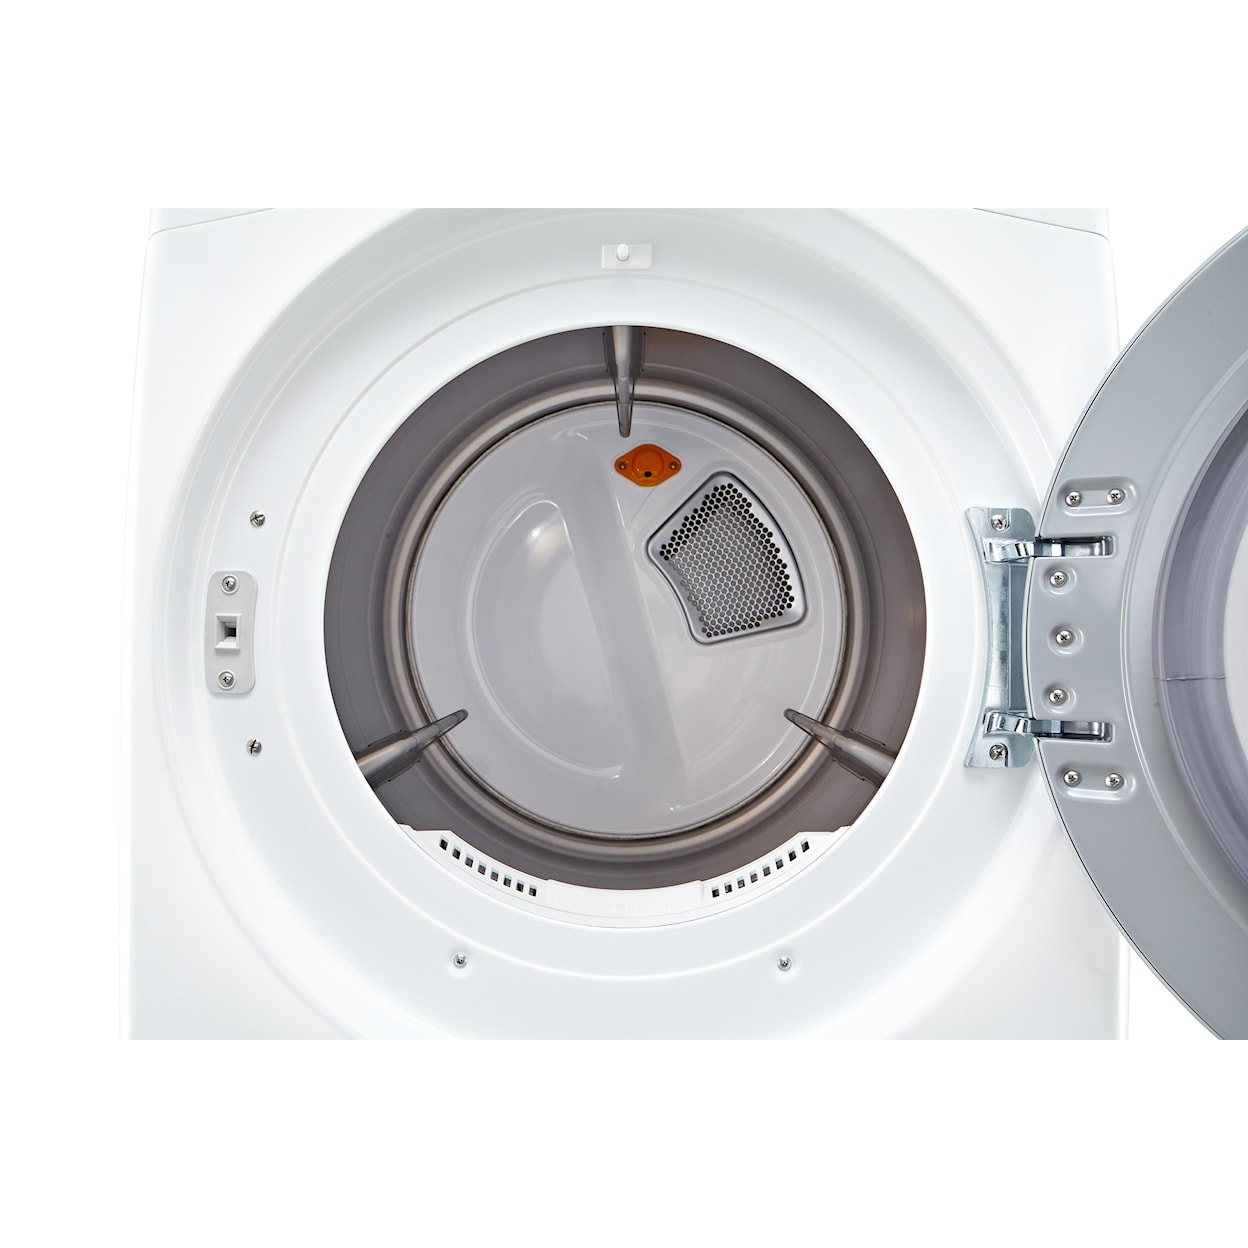 LG Appliances Dryers 7.4 cu. ft. Front Load Gas Dryer